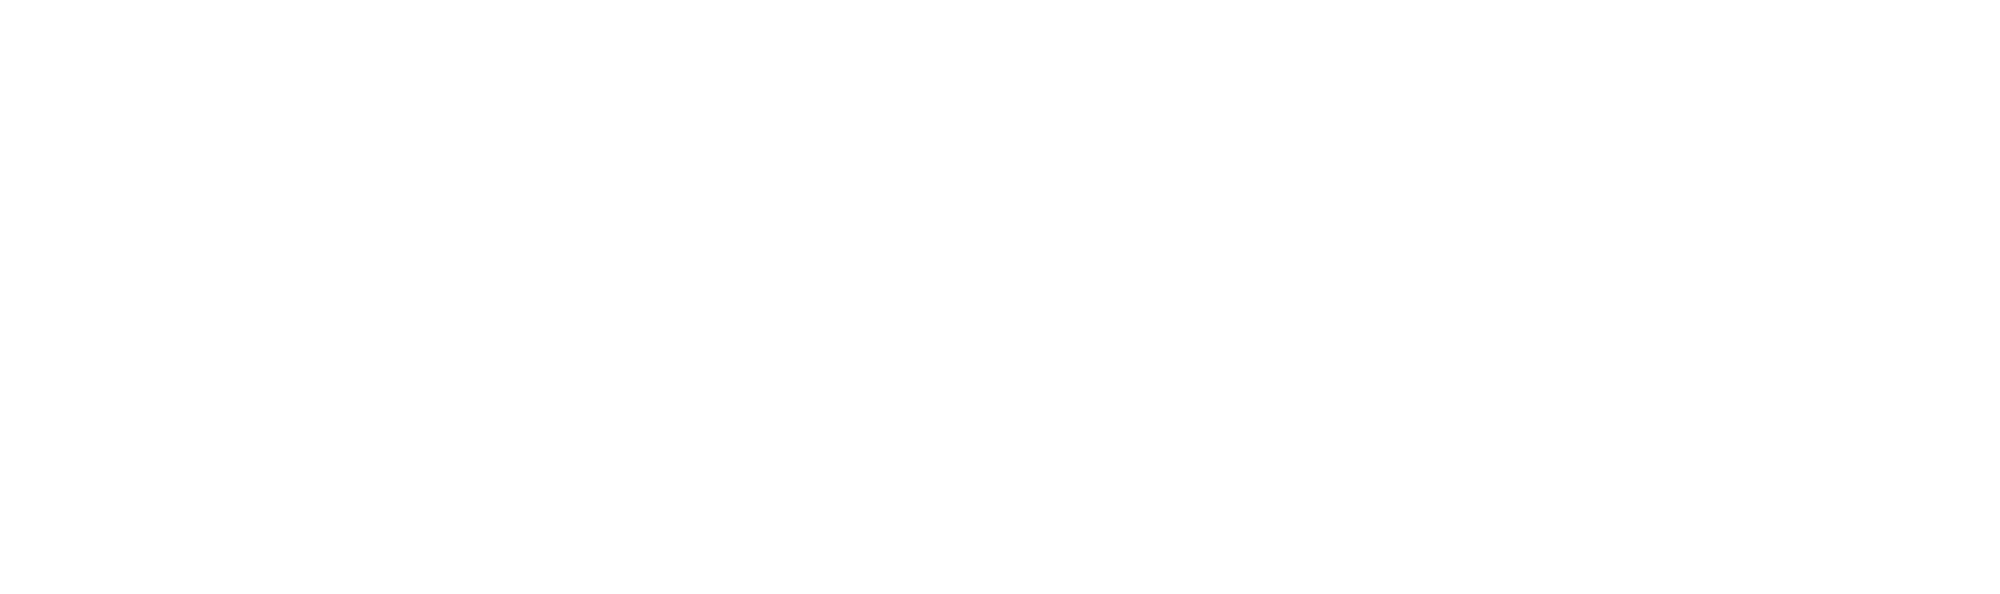 nasdaq1-logo-black-and-white-1